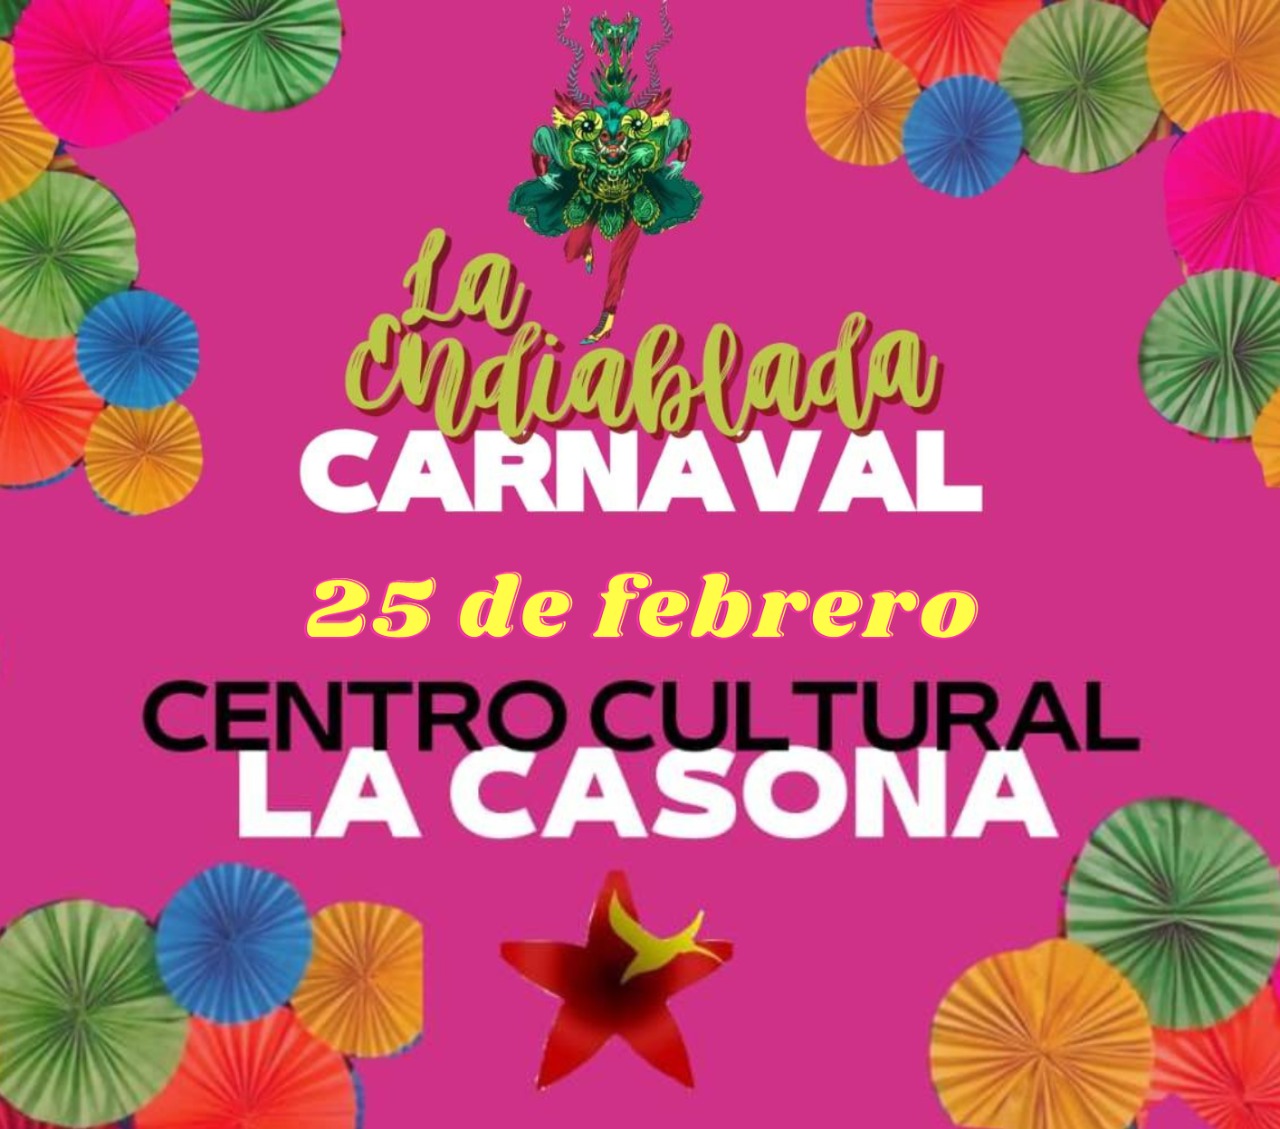 La Casona presenta los festejos de Carnaval